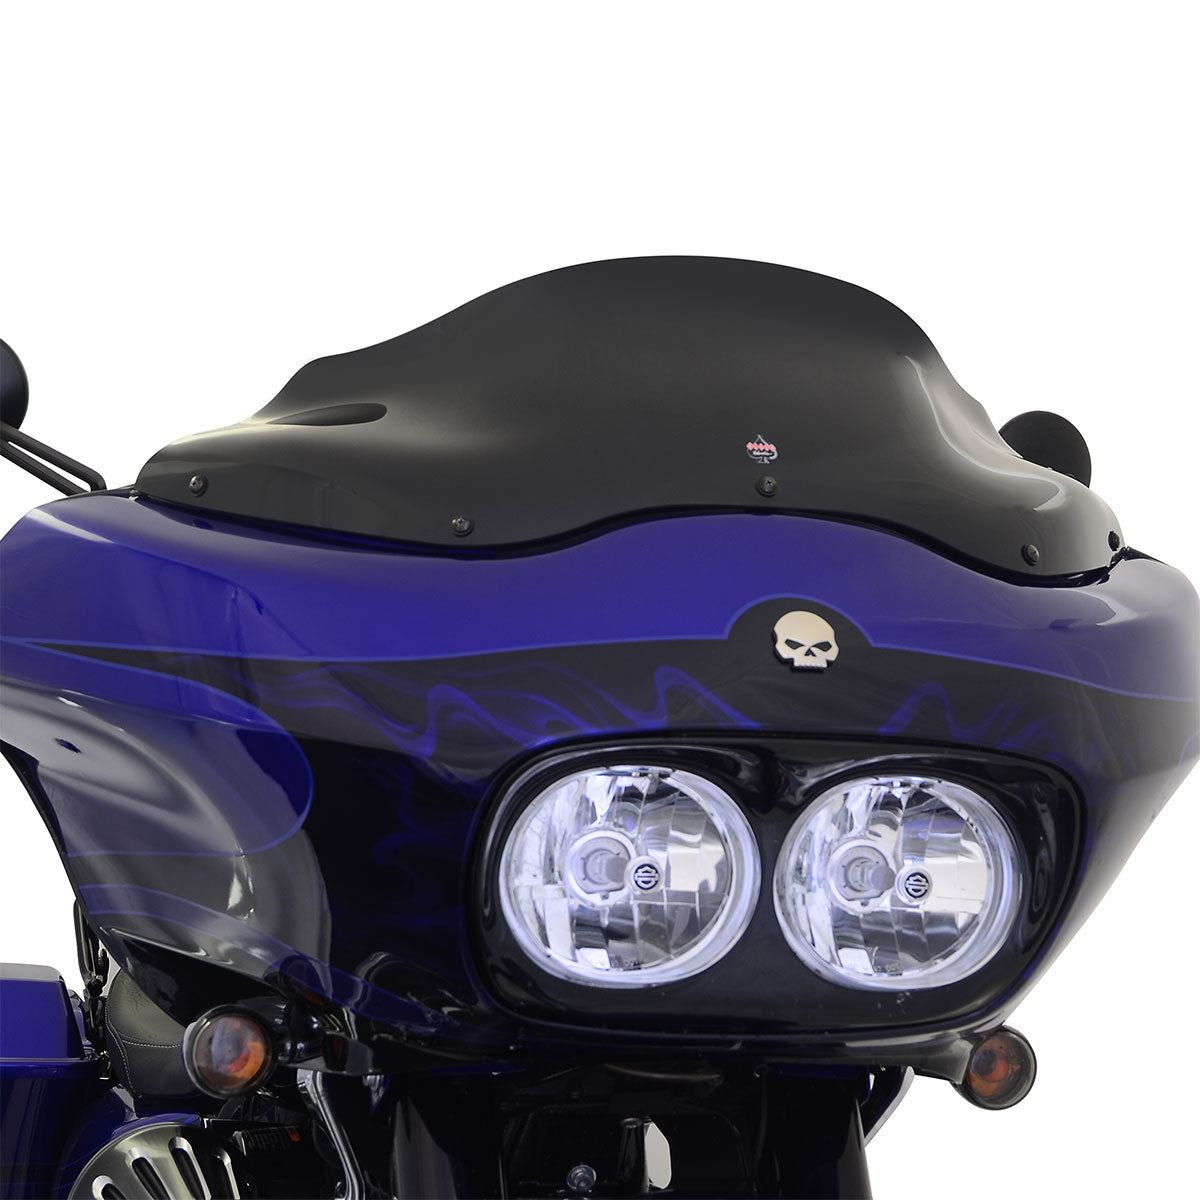 8" Sport Solid Black Flare™ Windshield for Harley-Davidson 1998-2013 Road Glide Motorcycle Models